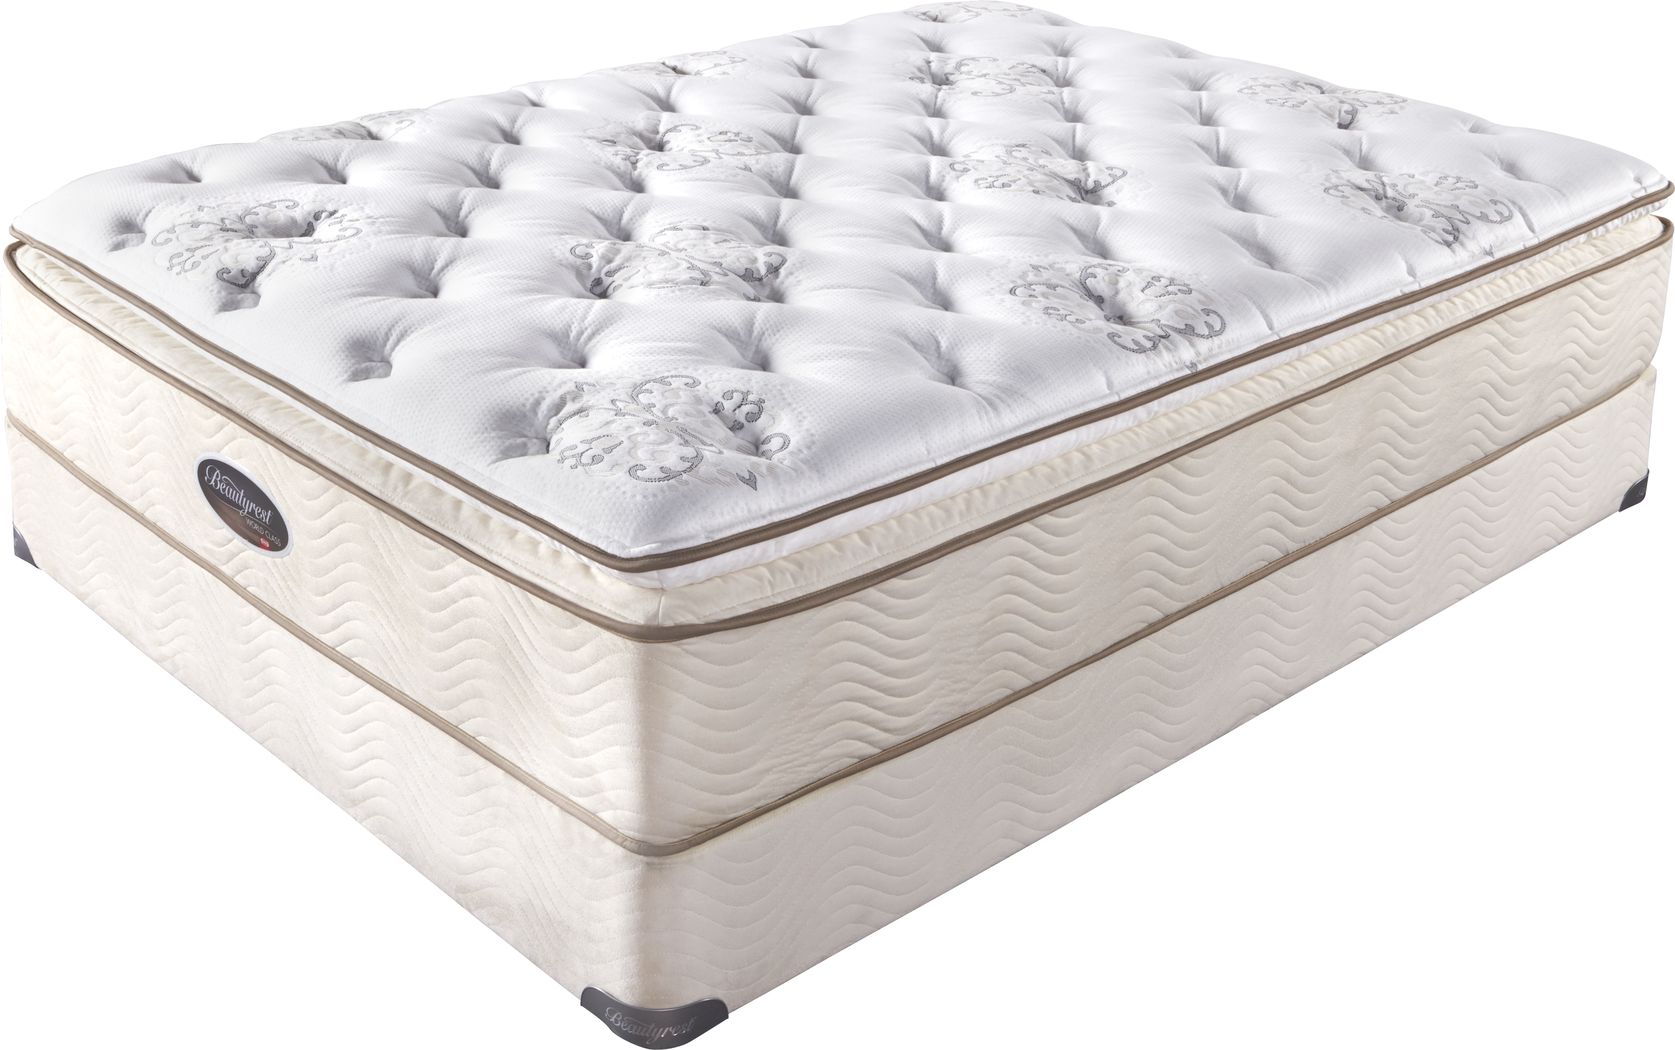 beautyrest recharge world class oakhurst king mattress